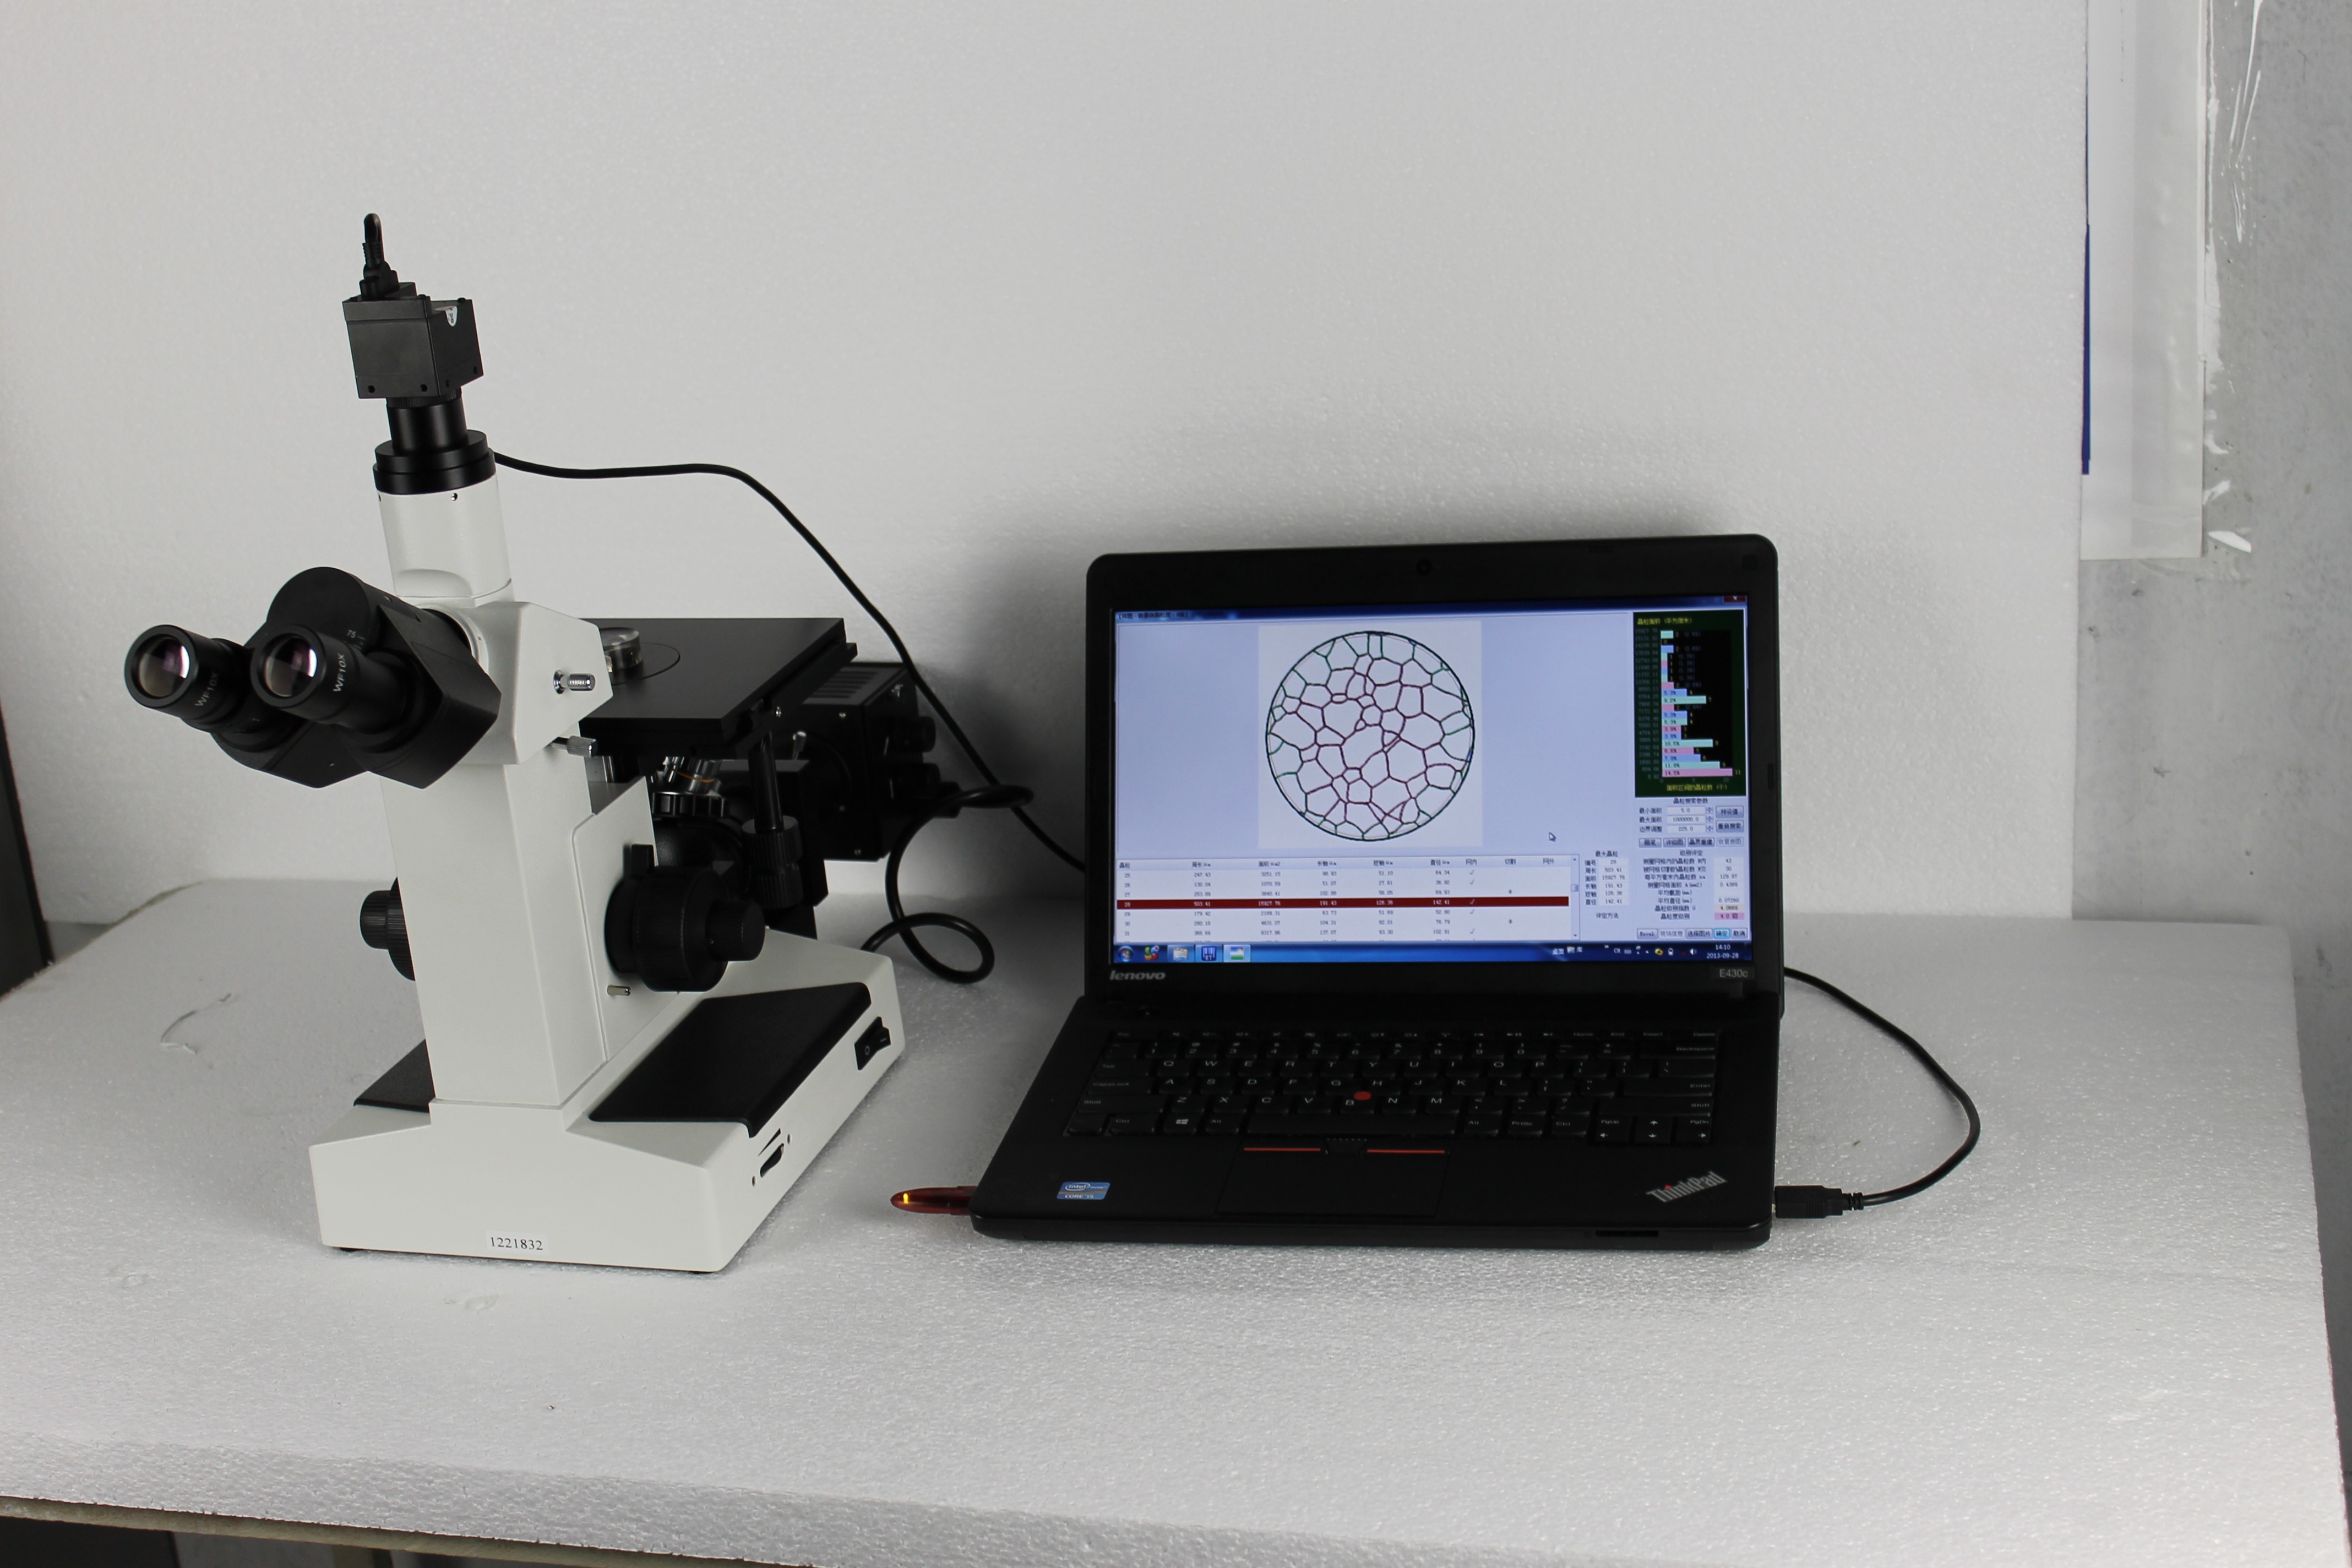 M-4XC倒置金相显微镜